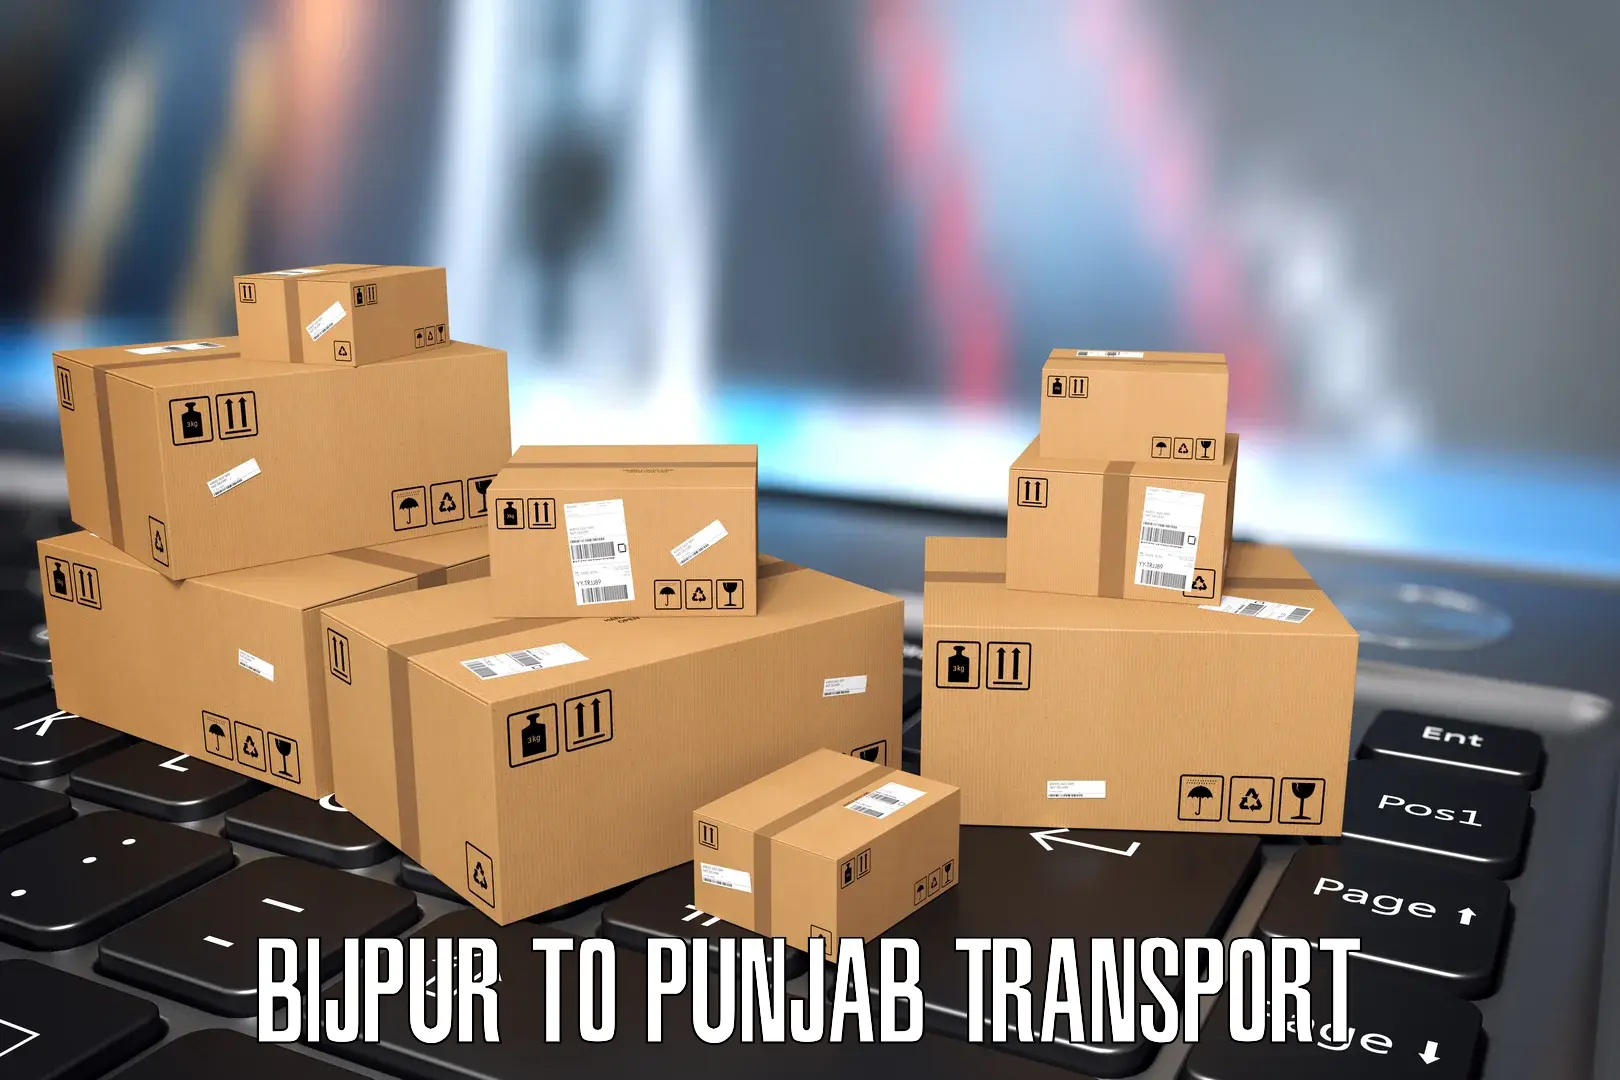 Nearest transport service Bijpur to Tarn Taran Sahib